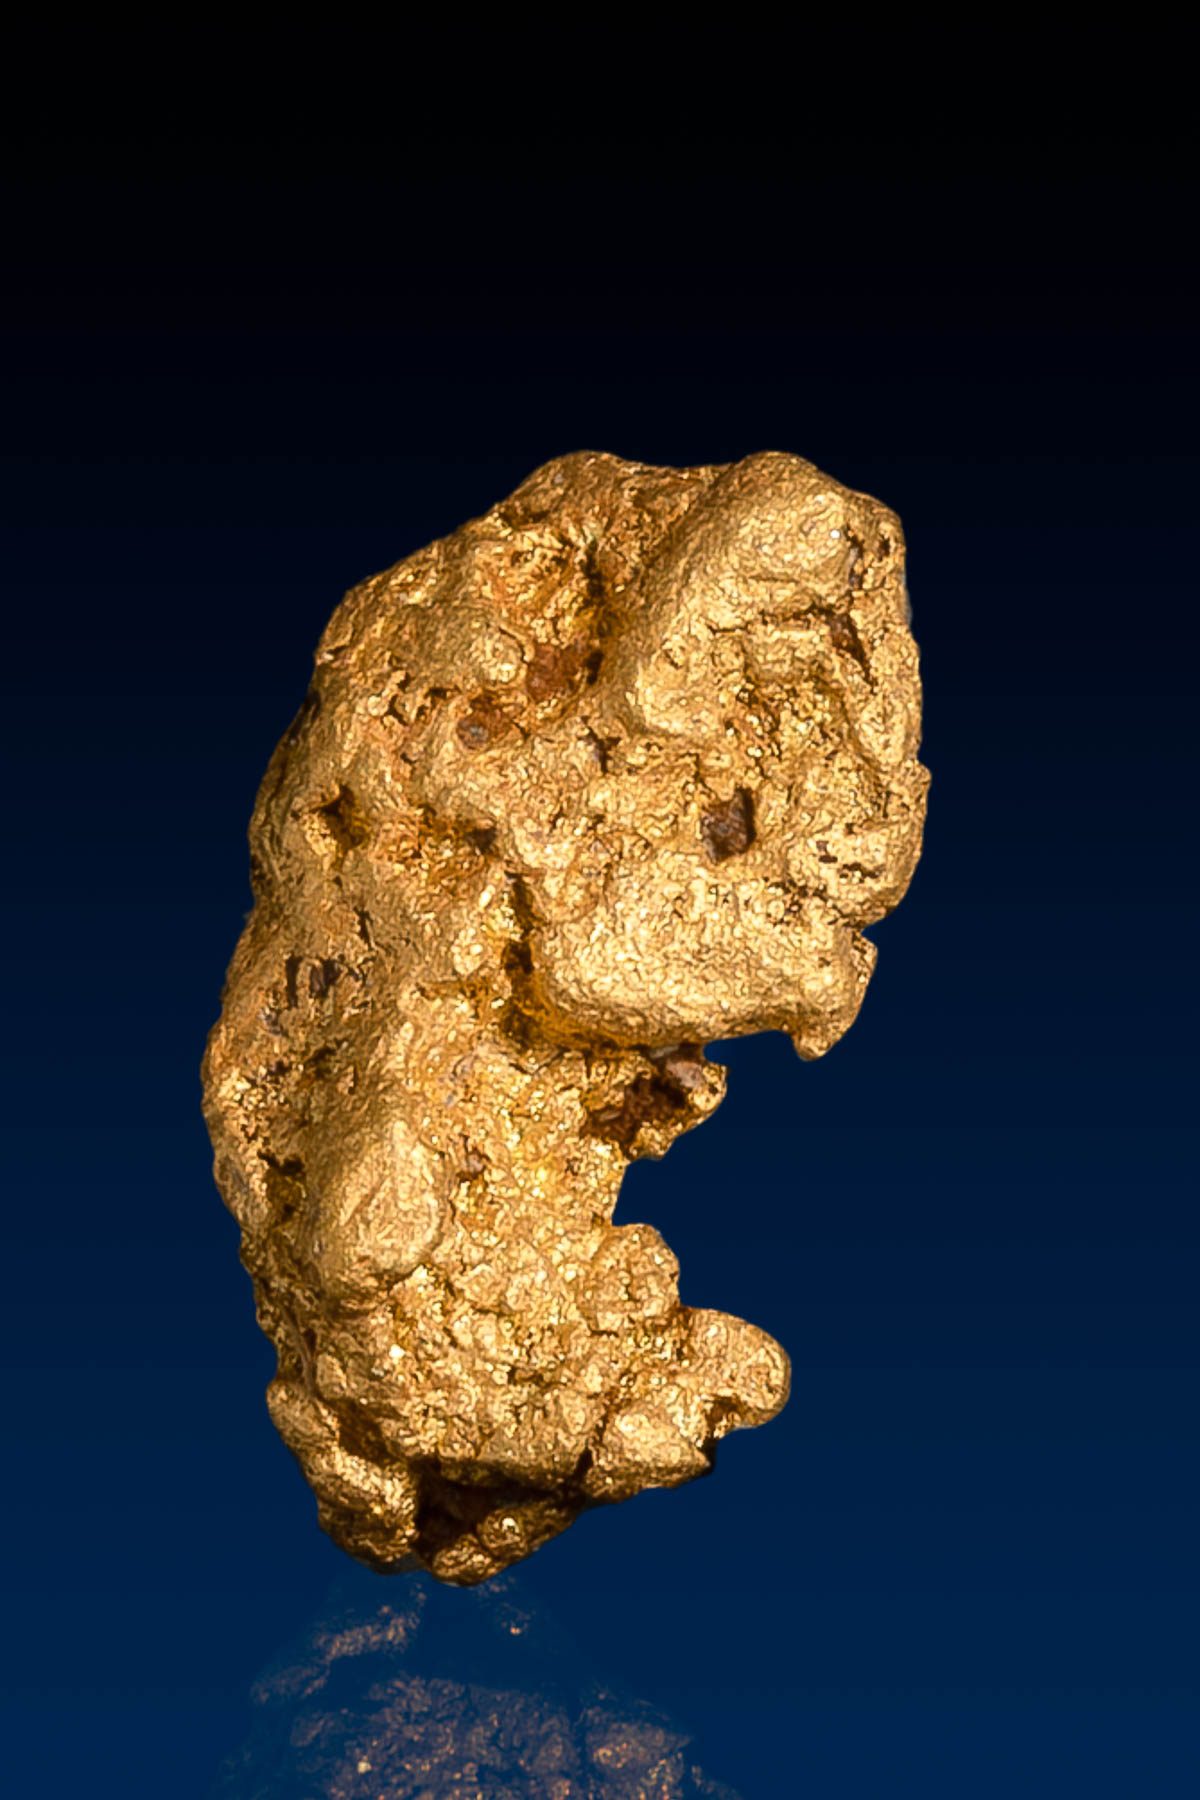 Peanut Shaped Arizona Natural Gold Nugget - 1.98 grams